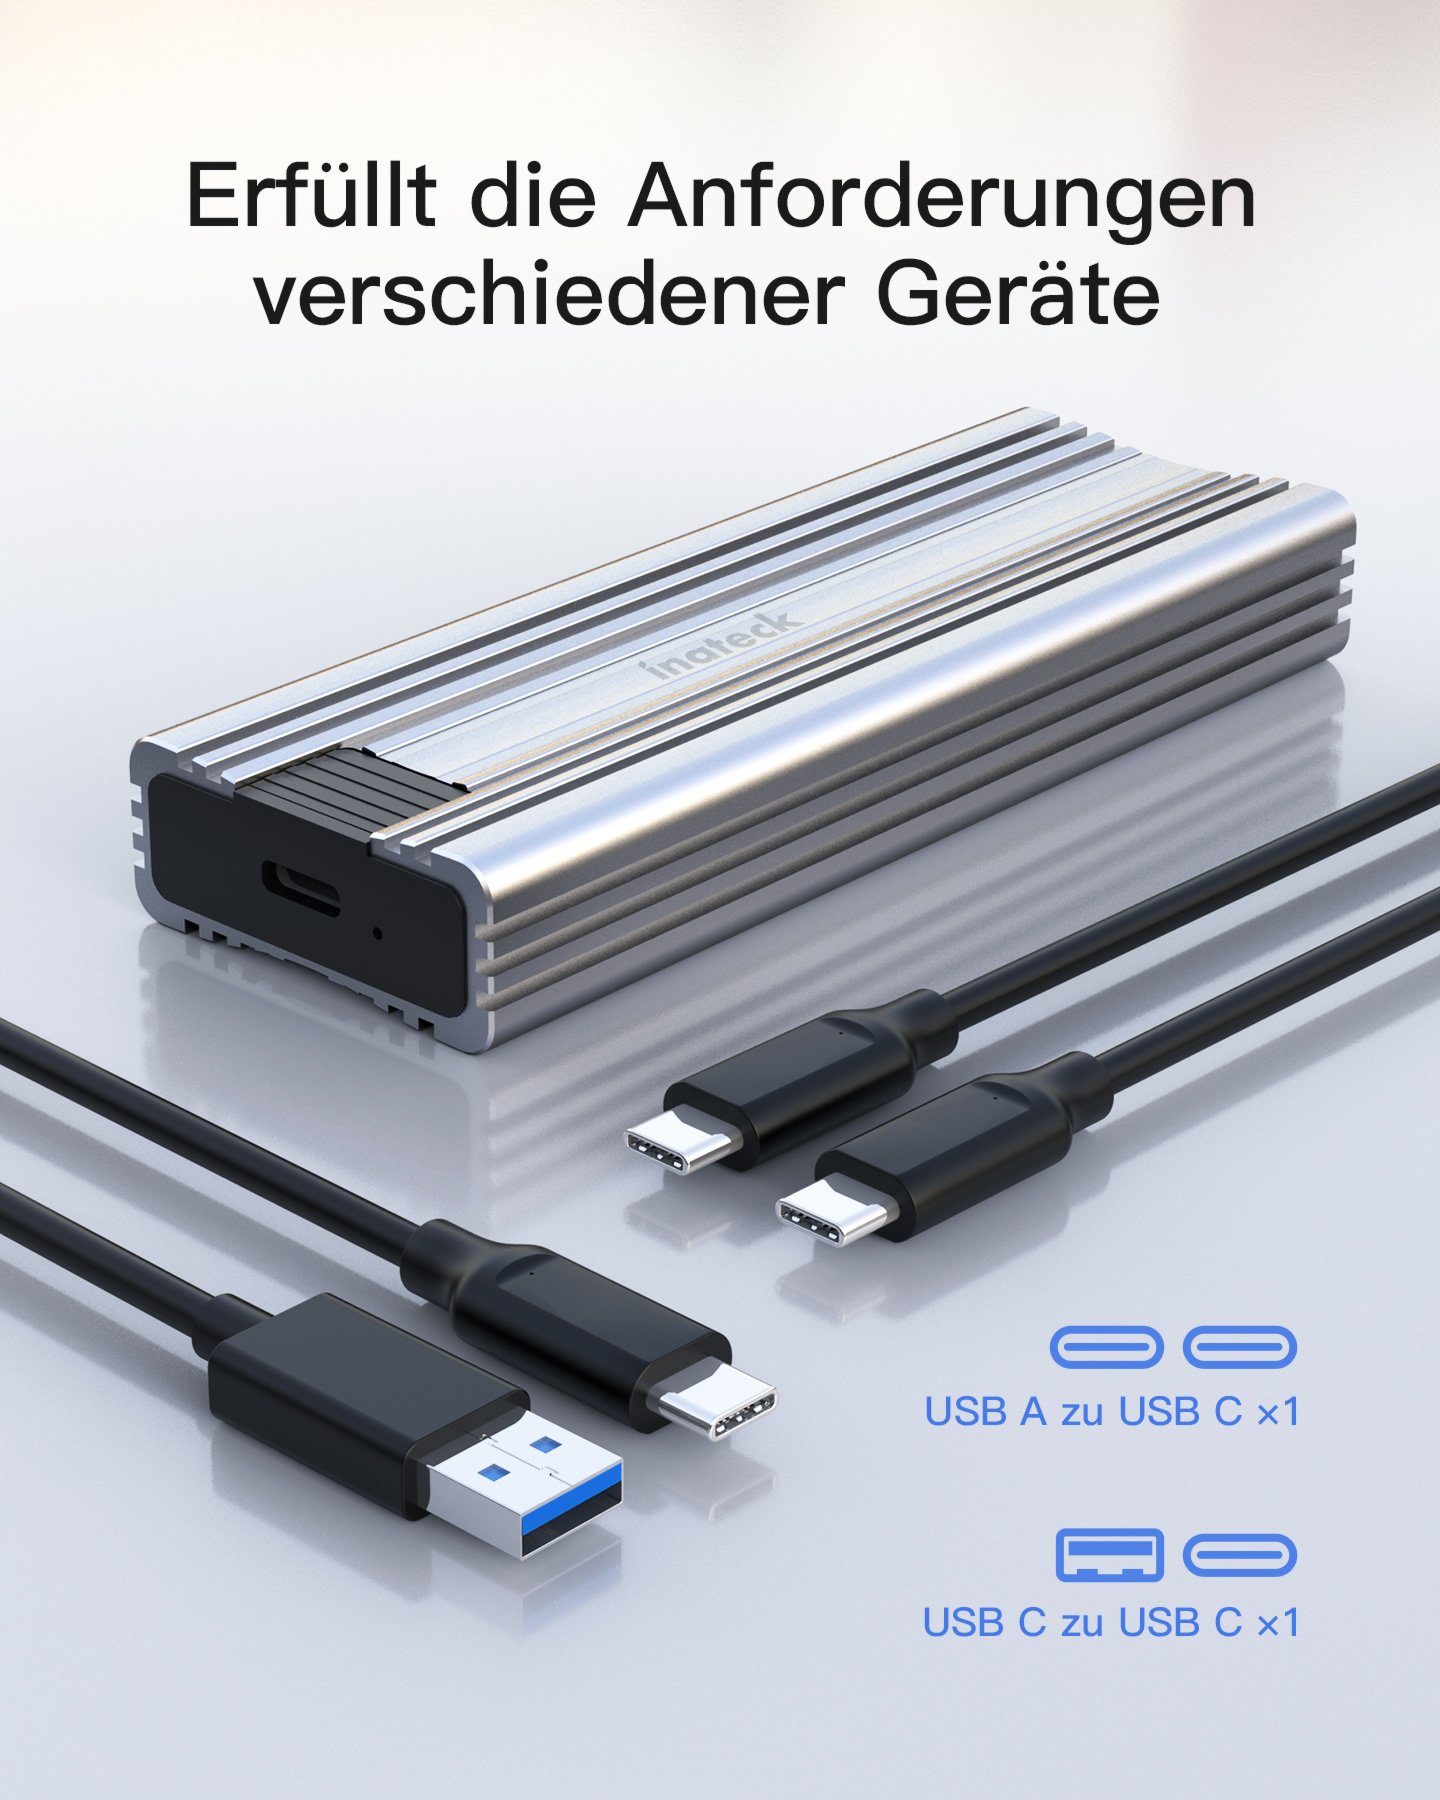 Inateck Festplatten-Gehäuse NVMe M.2 C C 10 Festplattengehäuse, USB Kabel C silber und zu Gbps, USB A zu mit